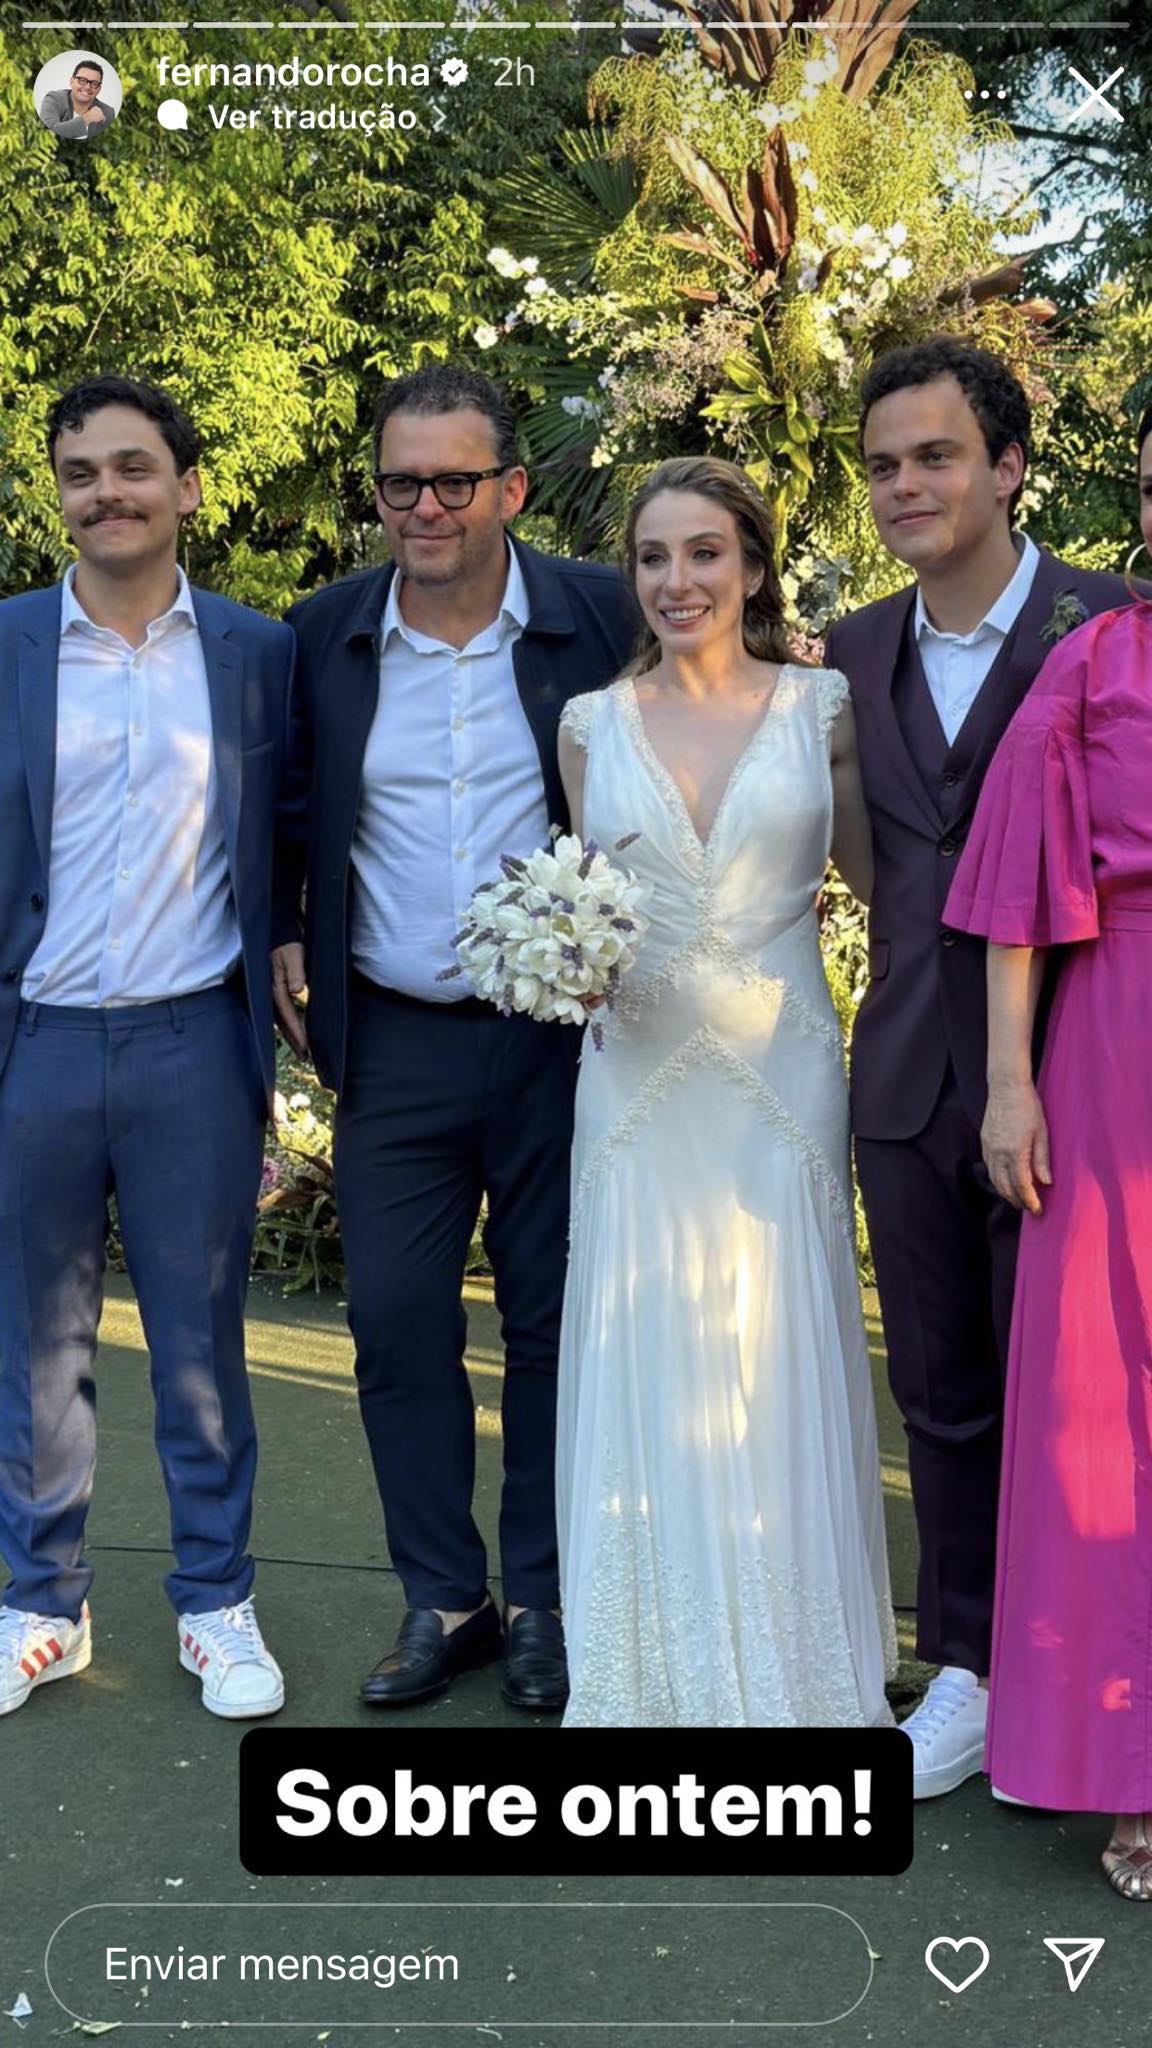 Pedro Rocha e Vanessa Gheno se casam